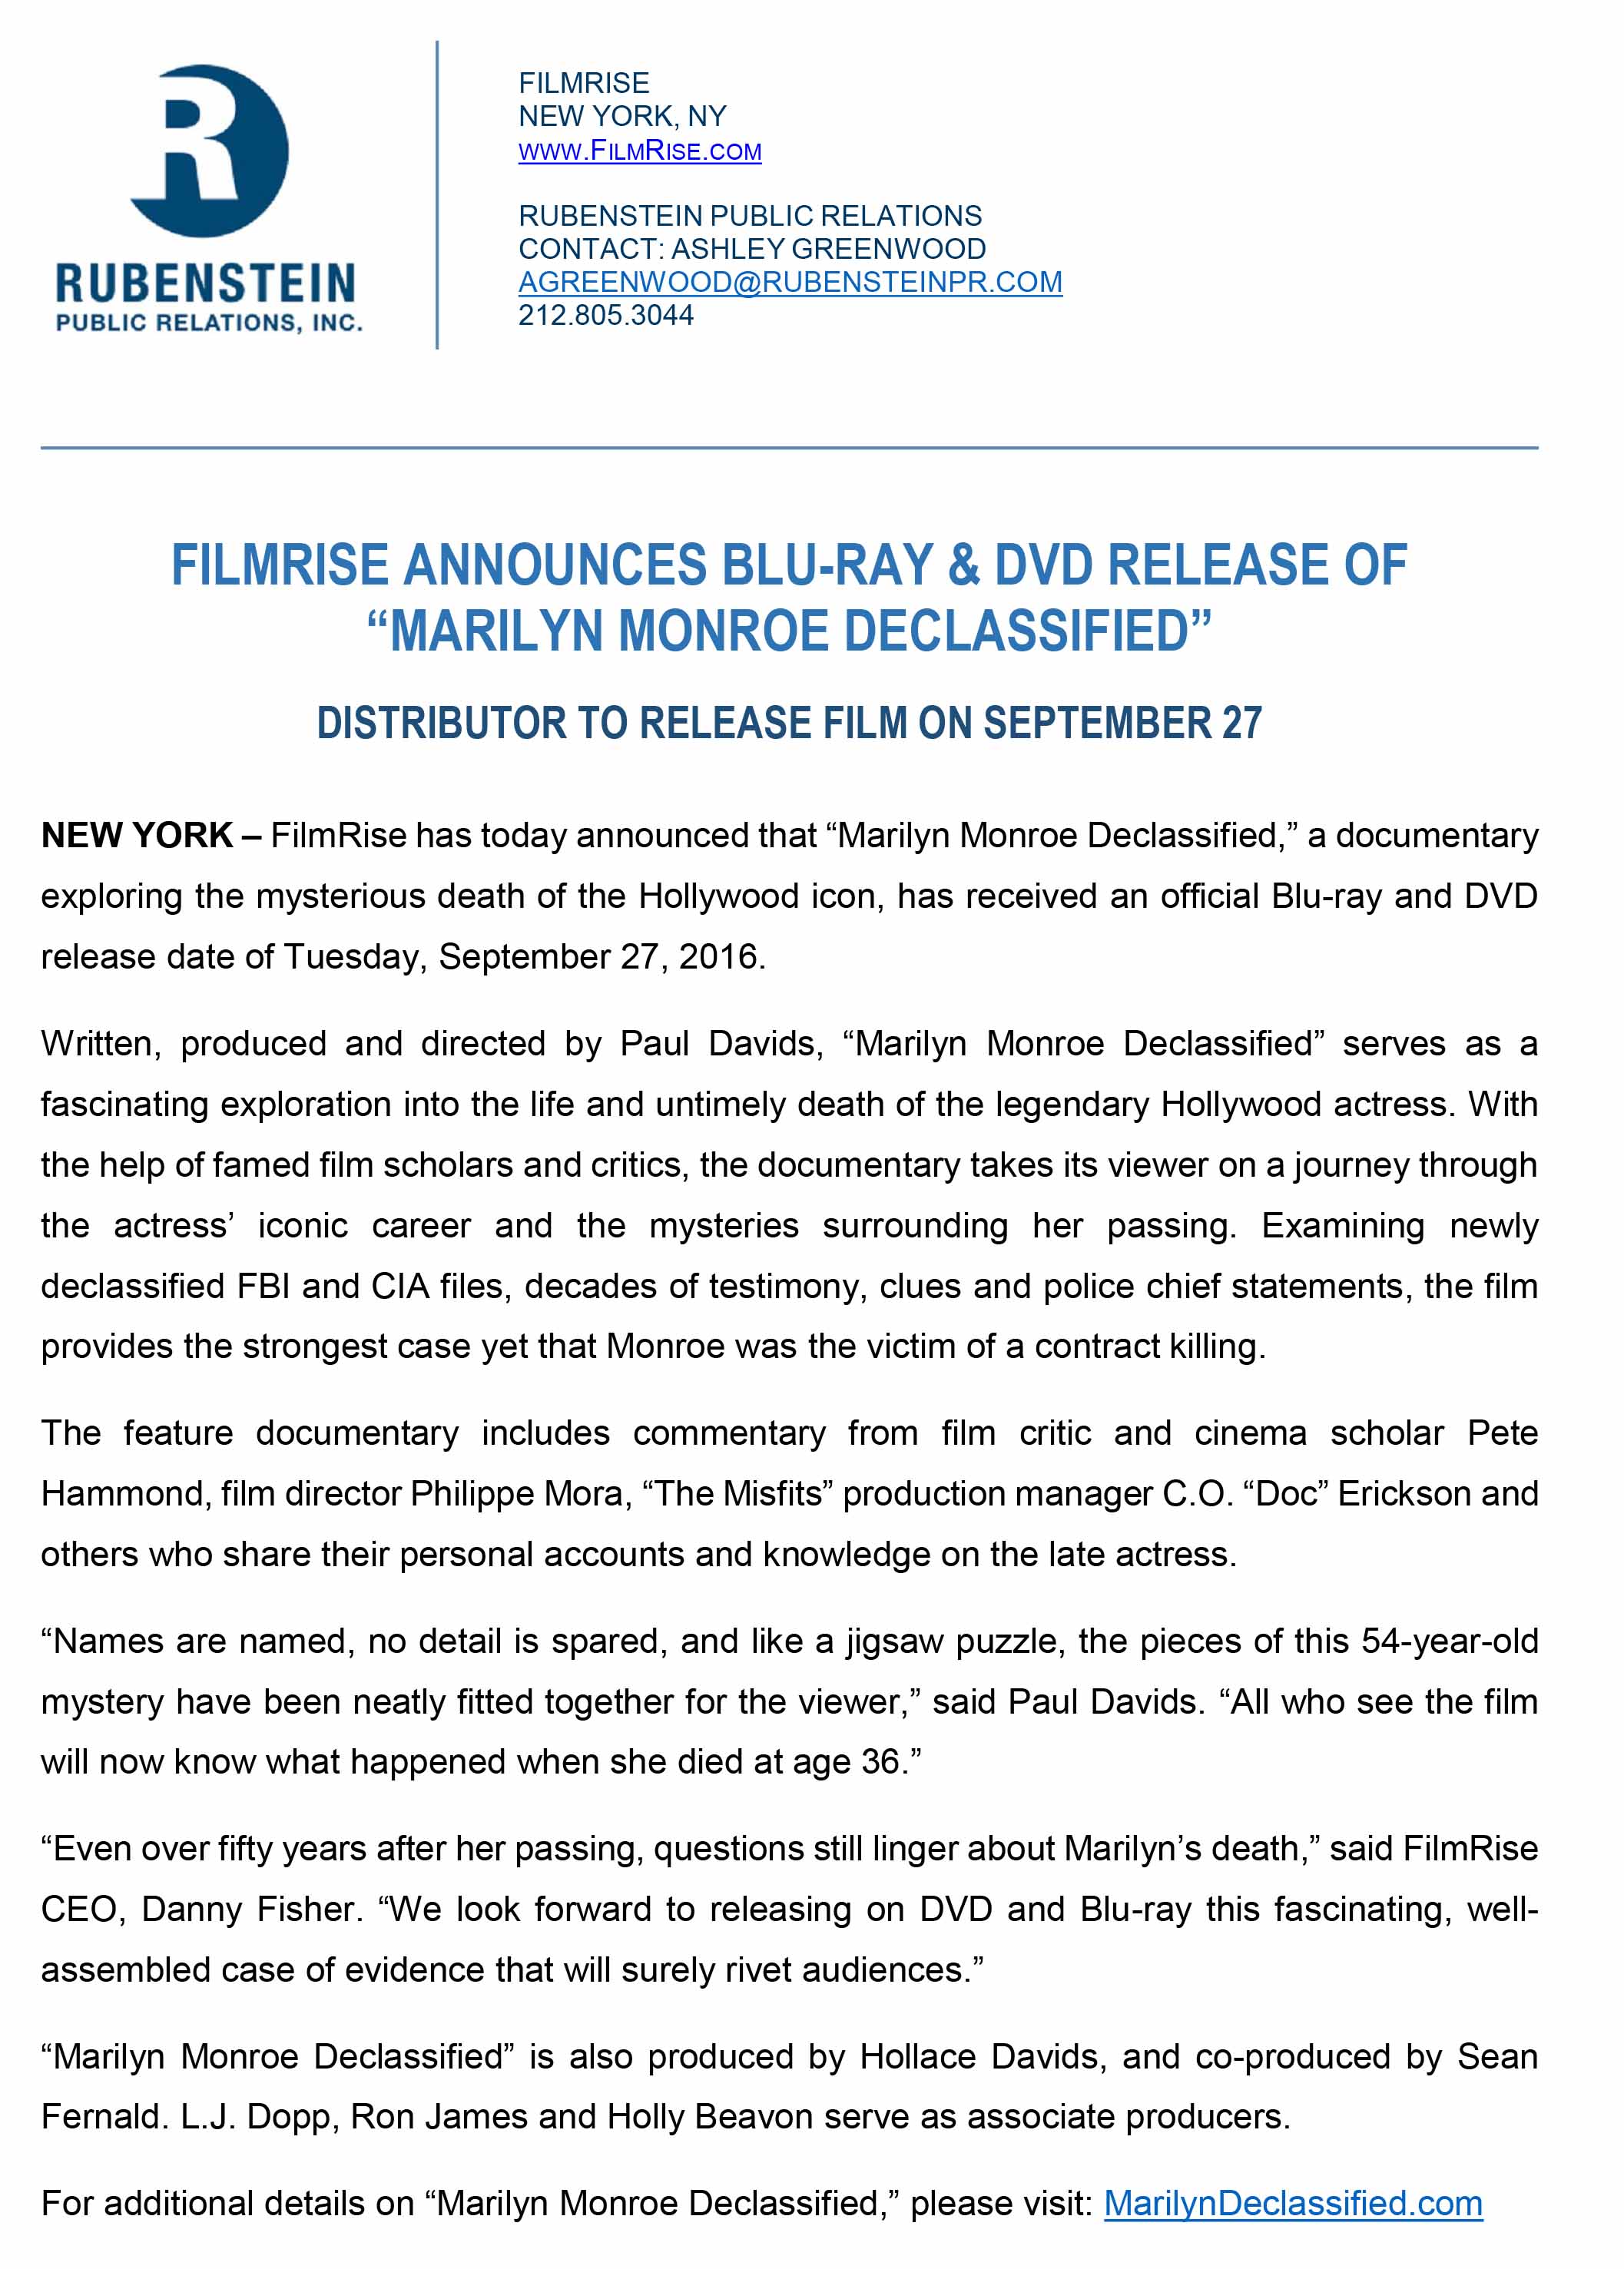 FilmRise Marilyn Monroe Declassified Press Release 2 1